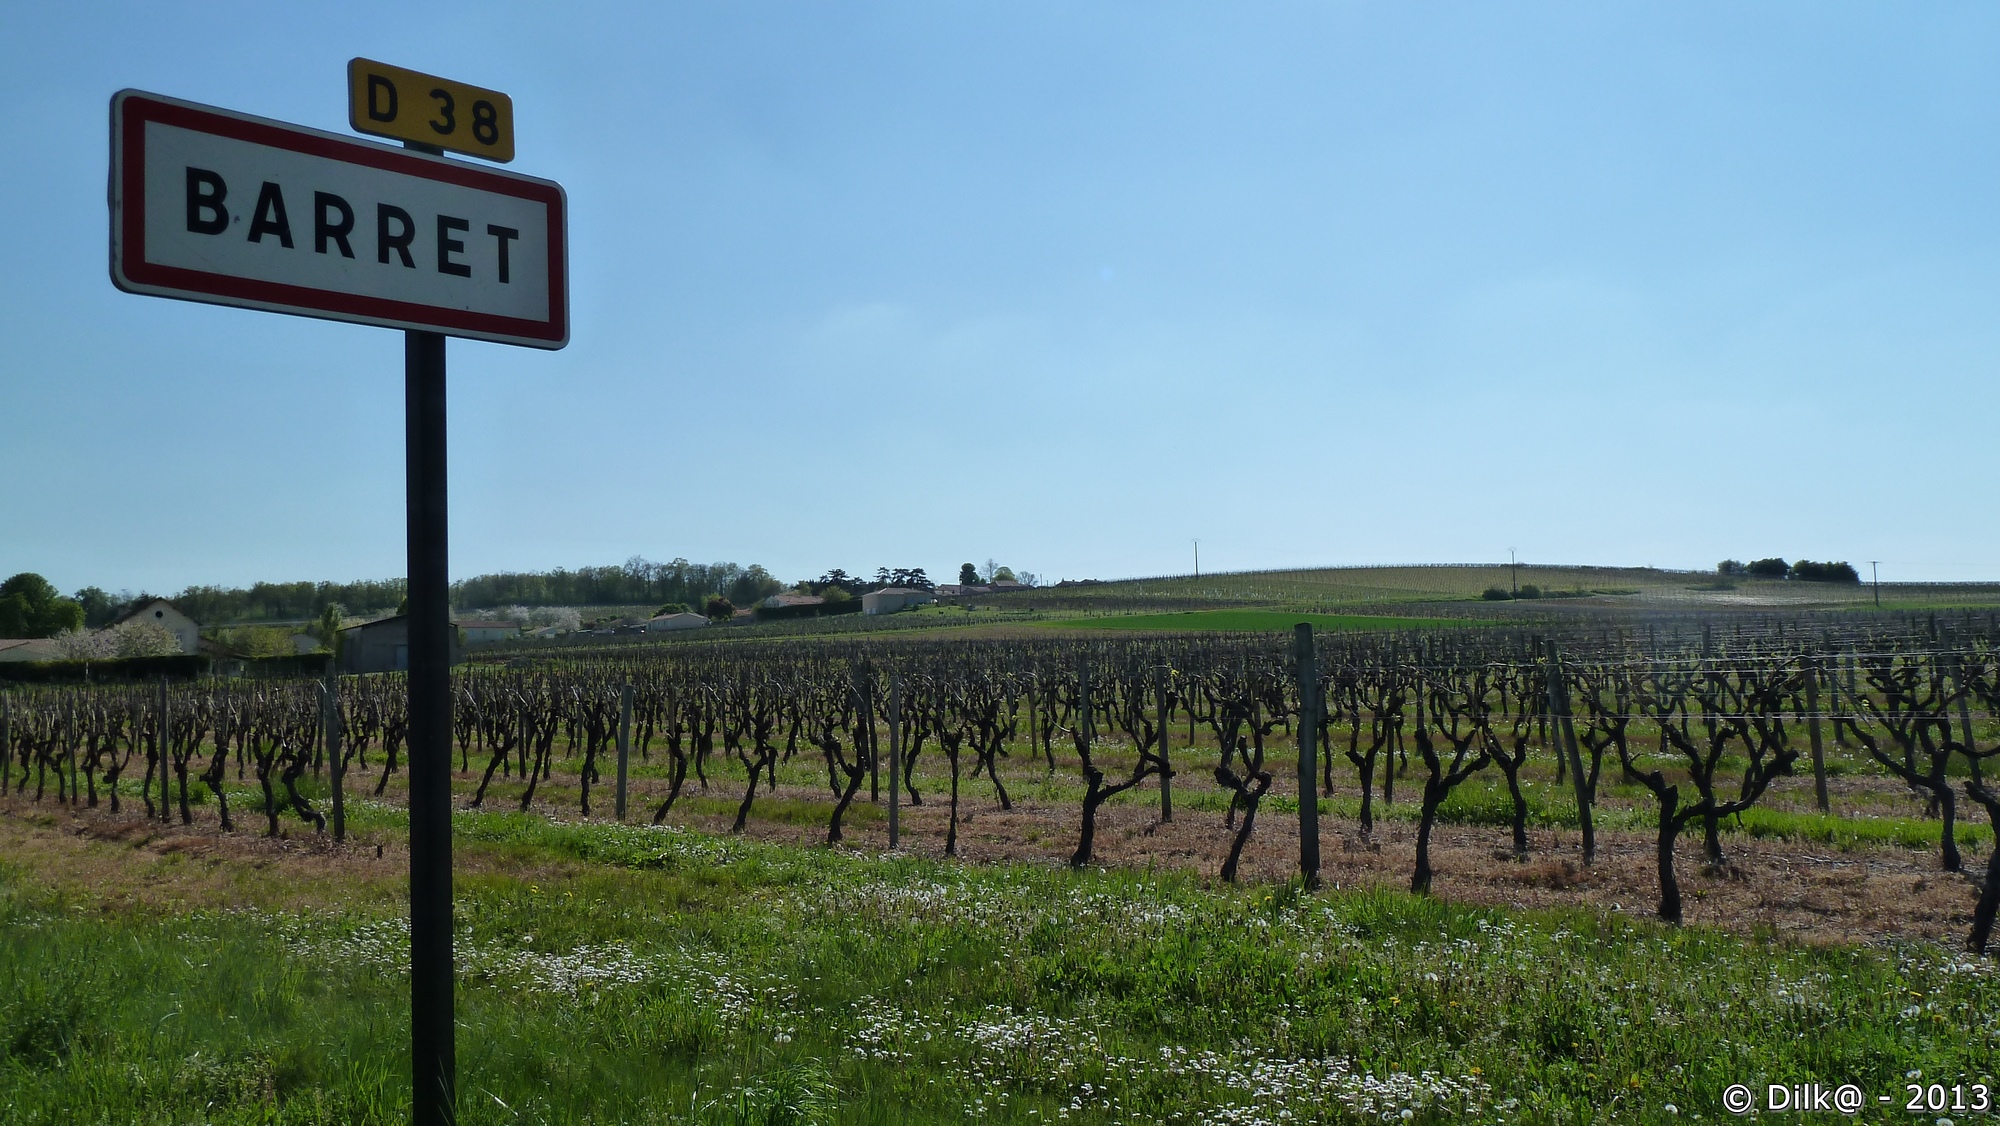 Le village Barret au milieu des vignes de Cognac en Charente